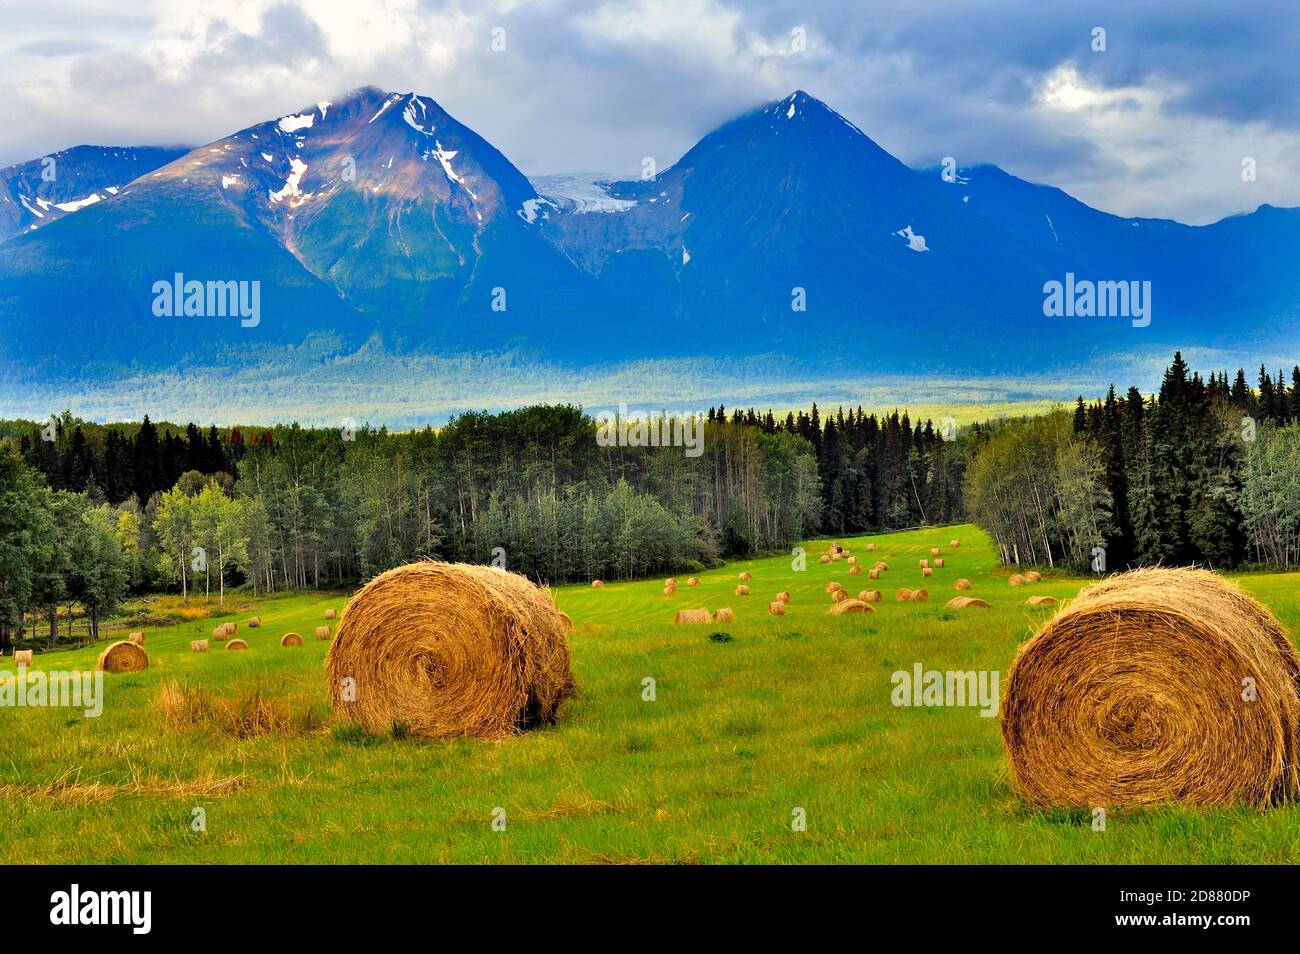 Image paysagère d'un champ agricole avec récolte de balles de foin sous le pied du mont de la baie d'Hudson près de Smithers Colombie-Britannique Canada. Banque D'Images